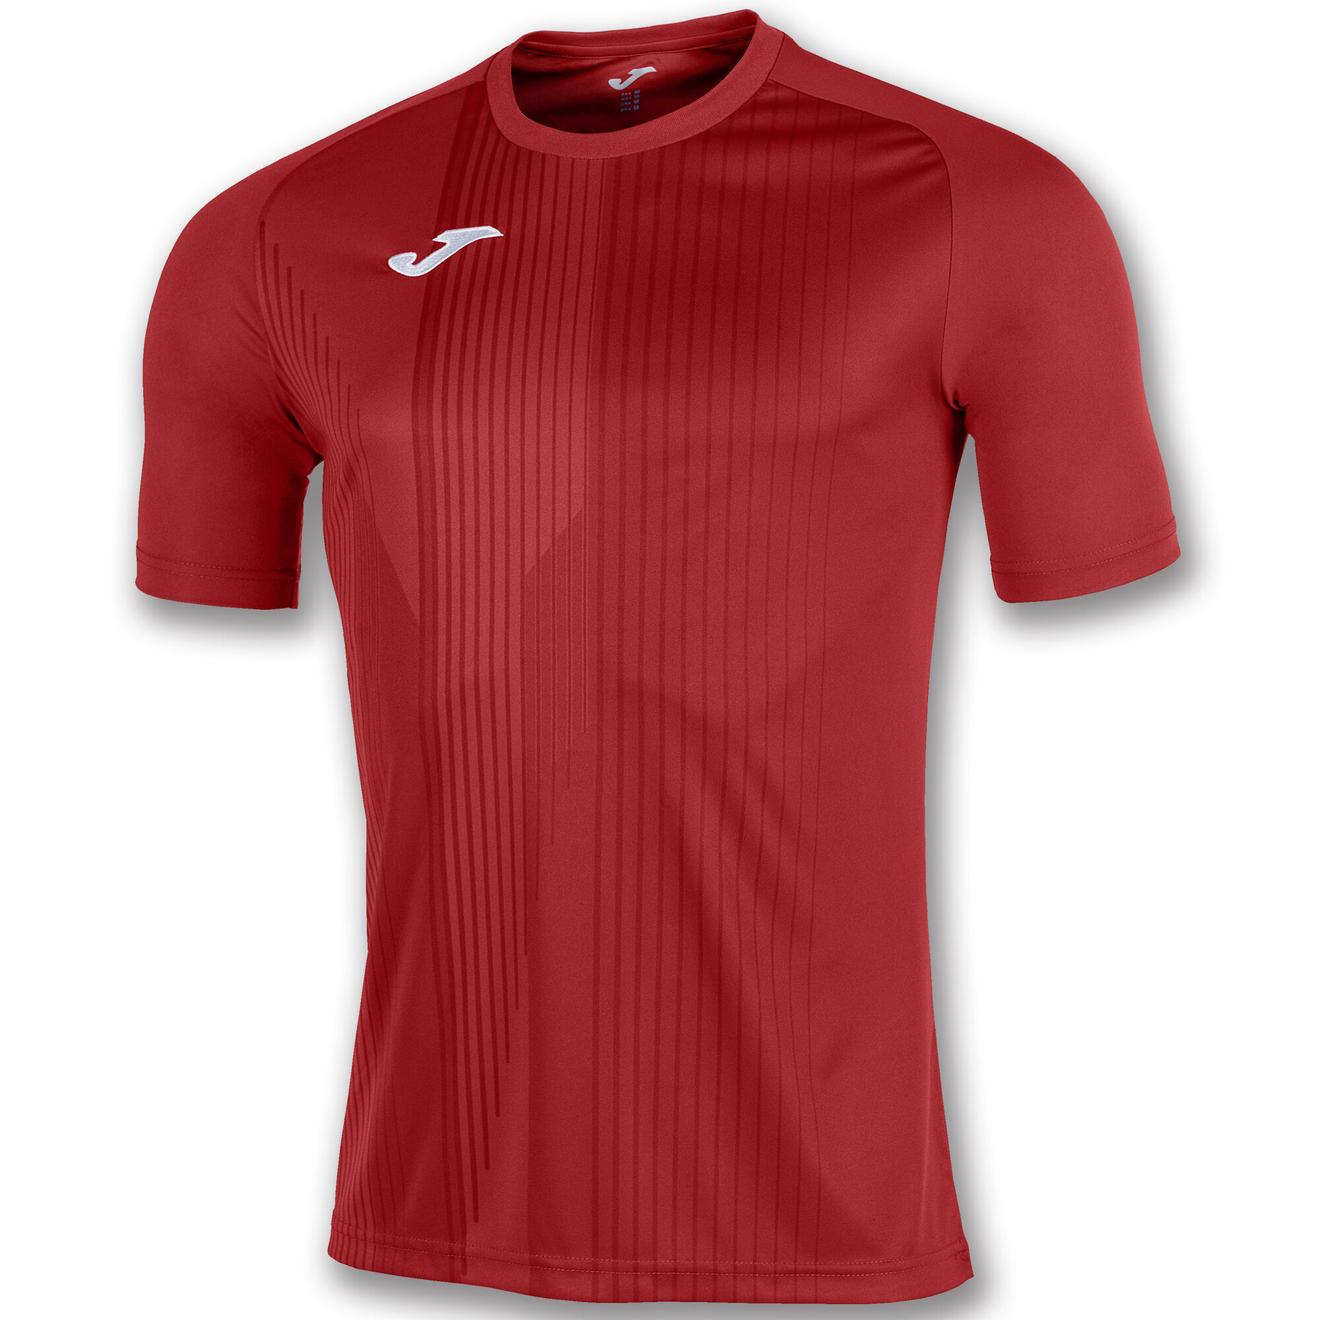 Oferta de Camiseta manga corta hombre Tiger rojo por $287.5 en Joma